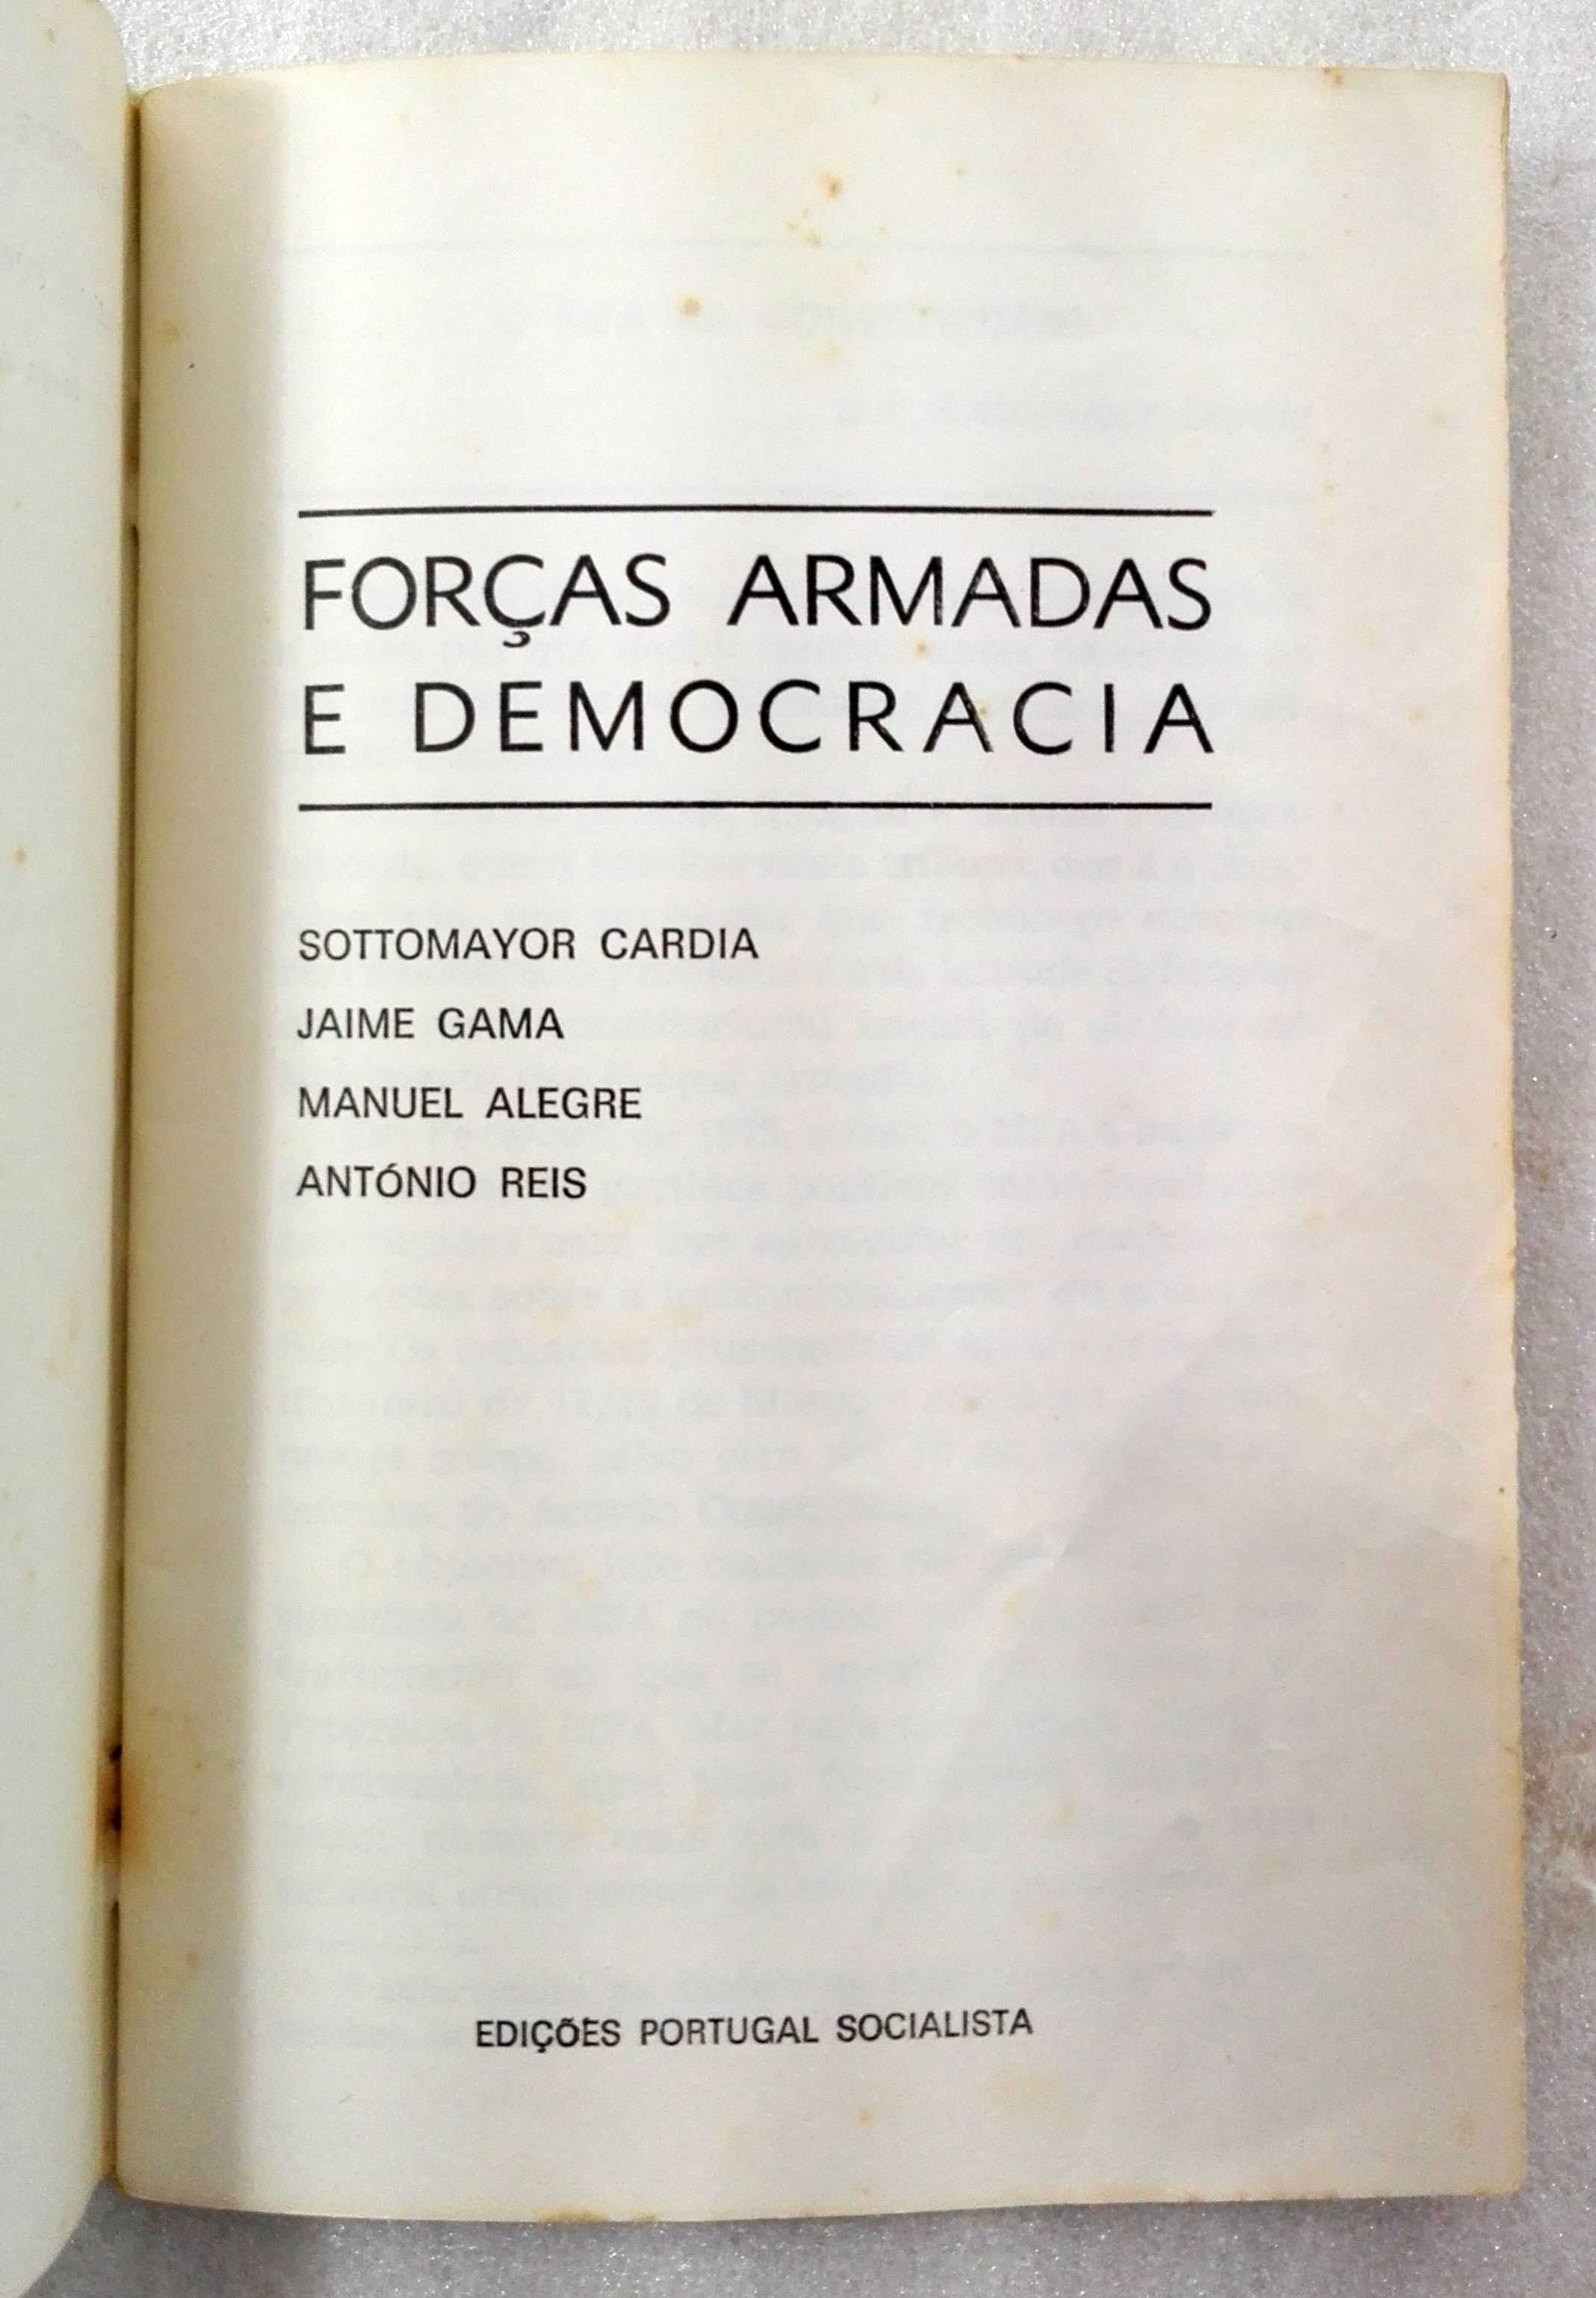 Caderno Forças Armadas e Democracia - Vol. 1